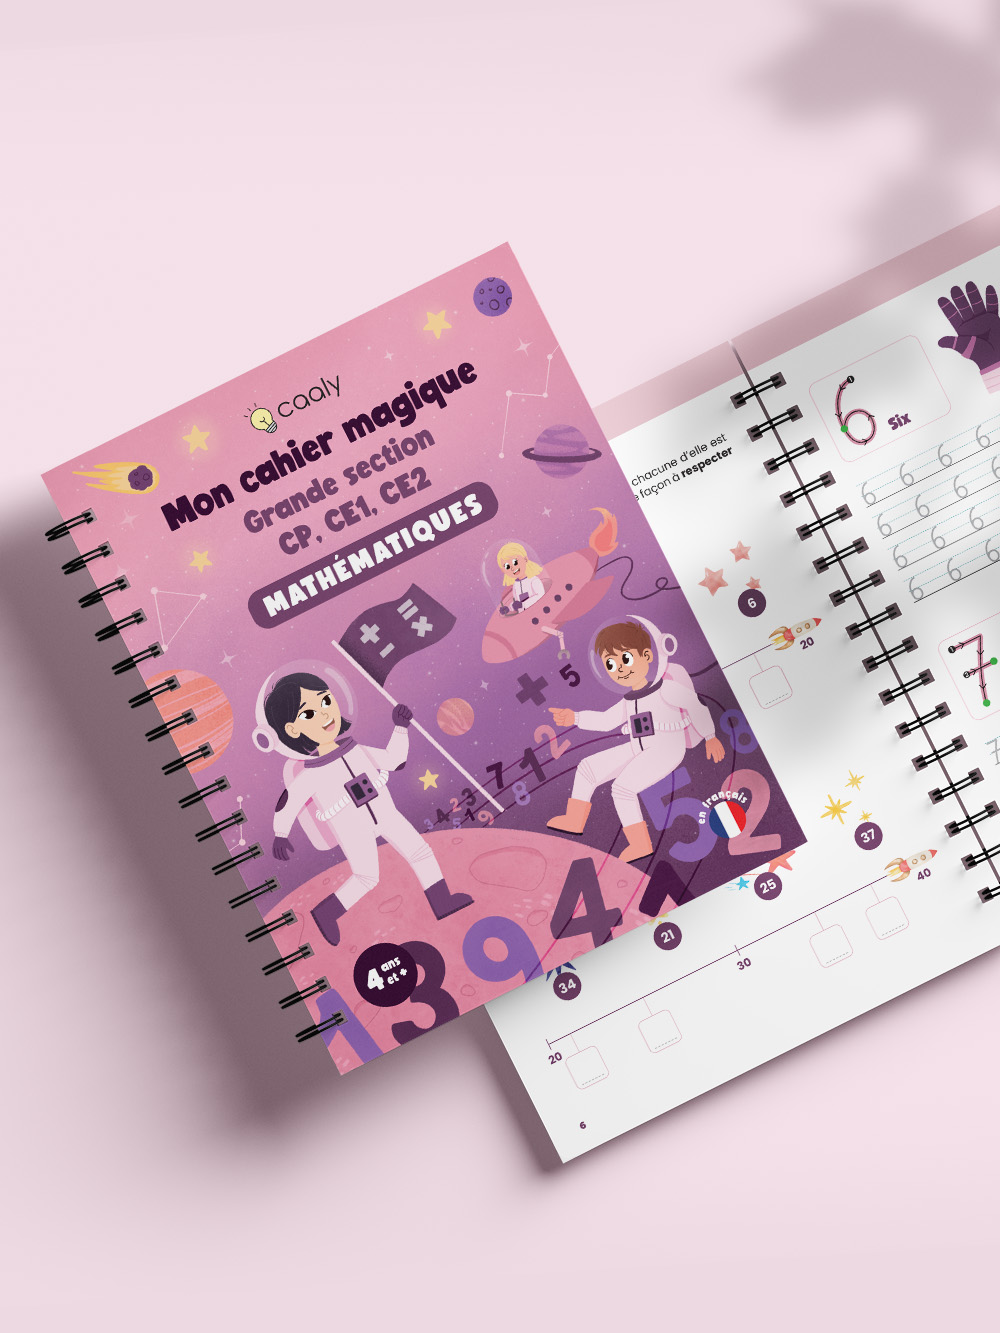 Illustration couverture cahier écriture pour enfants : illustration tons violets thème espace